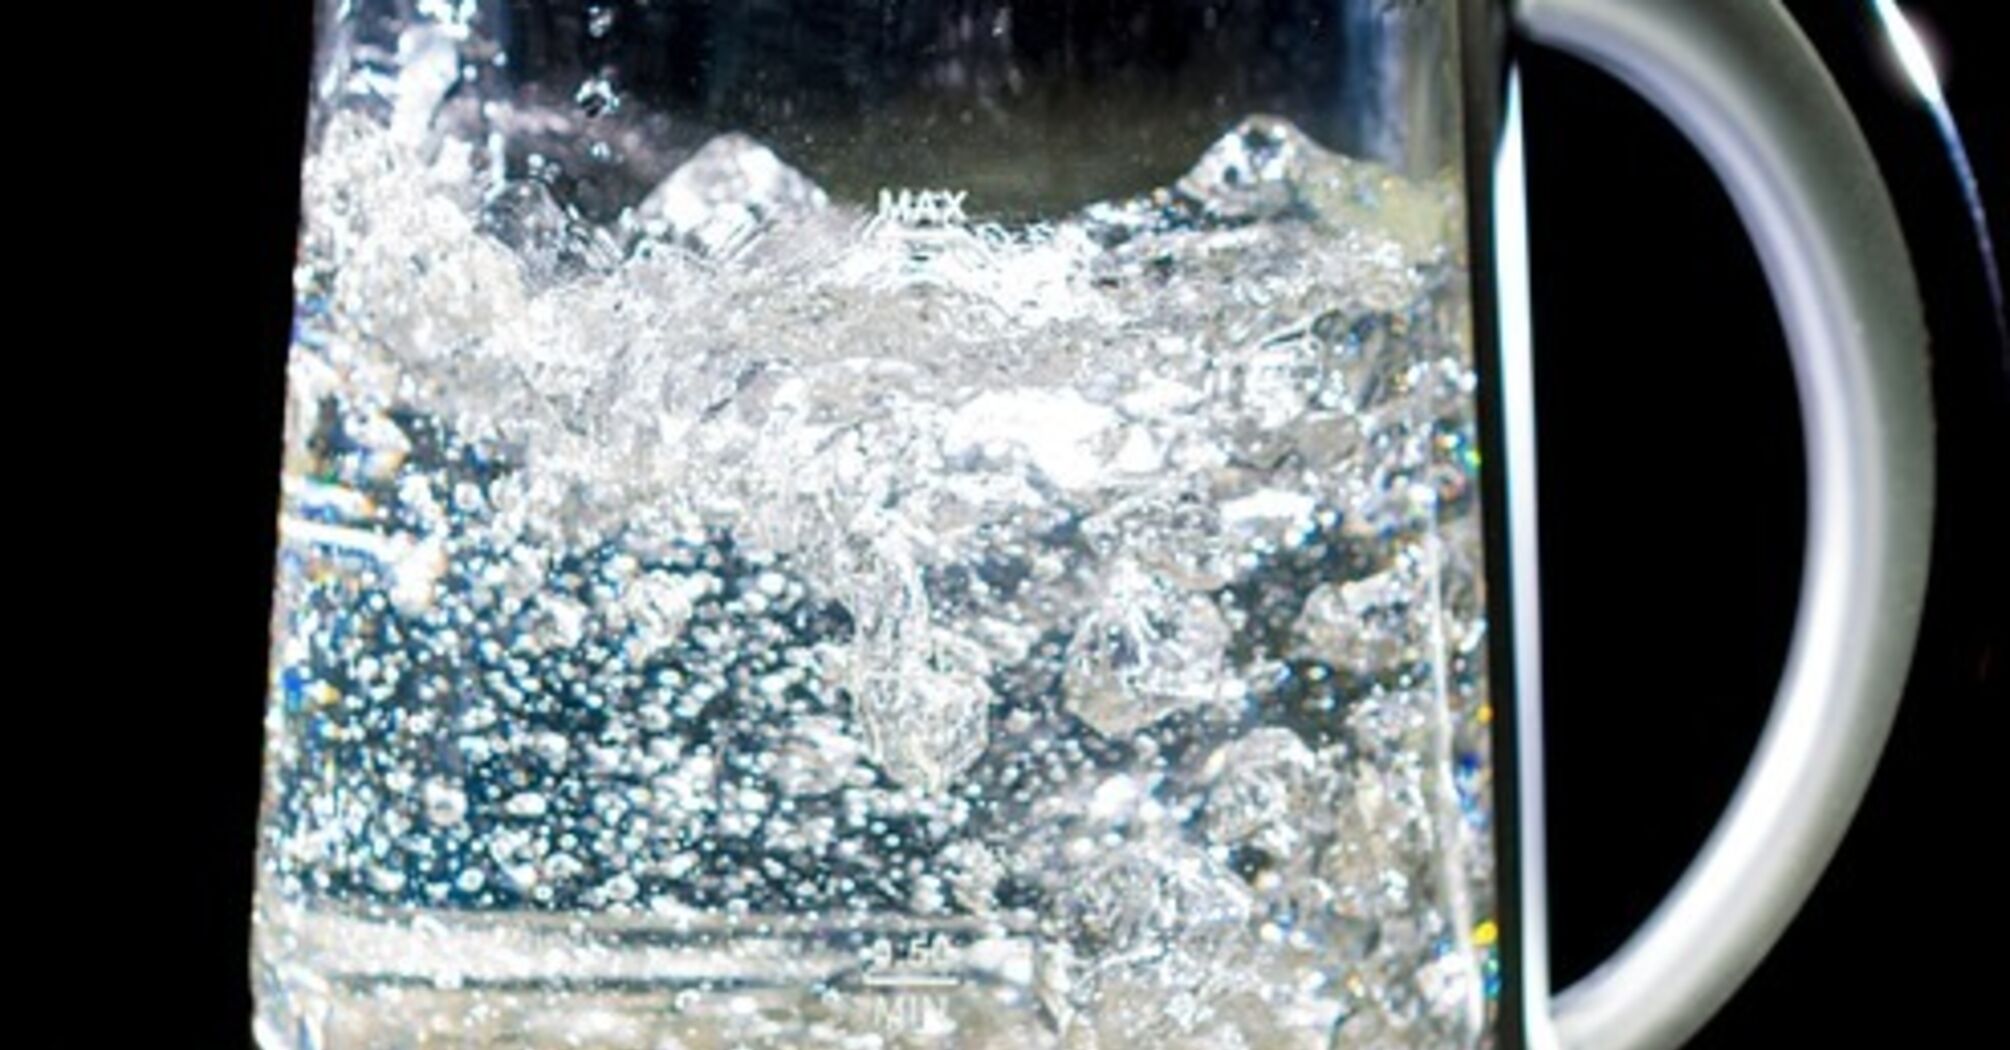 Як покращити якість питної води: три прості лайфхаки